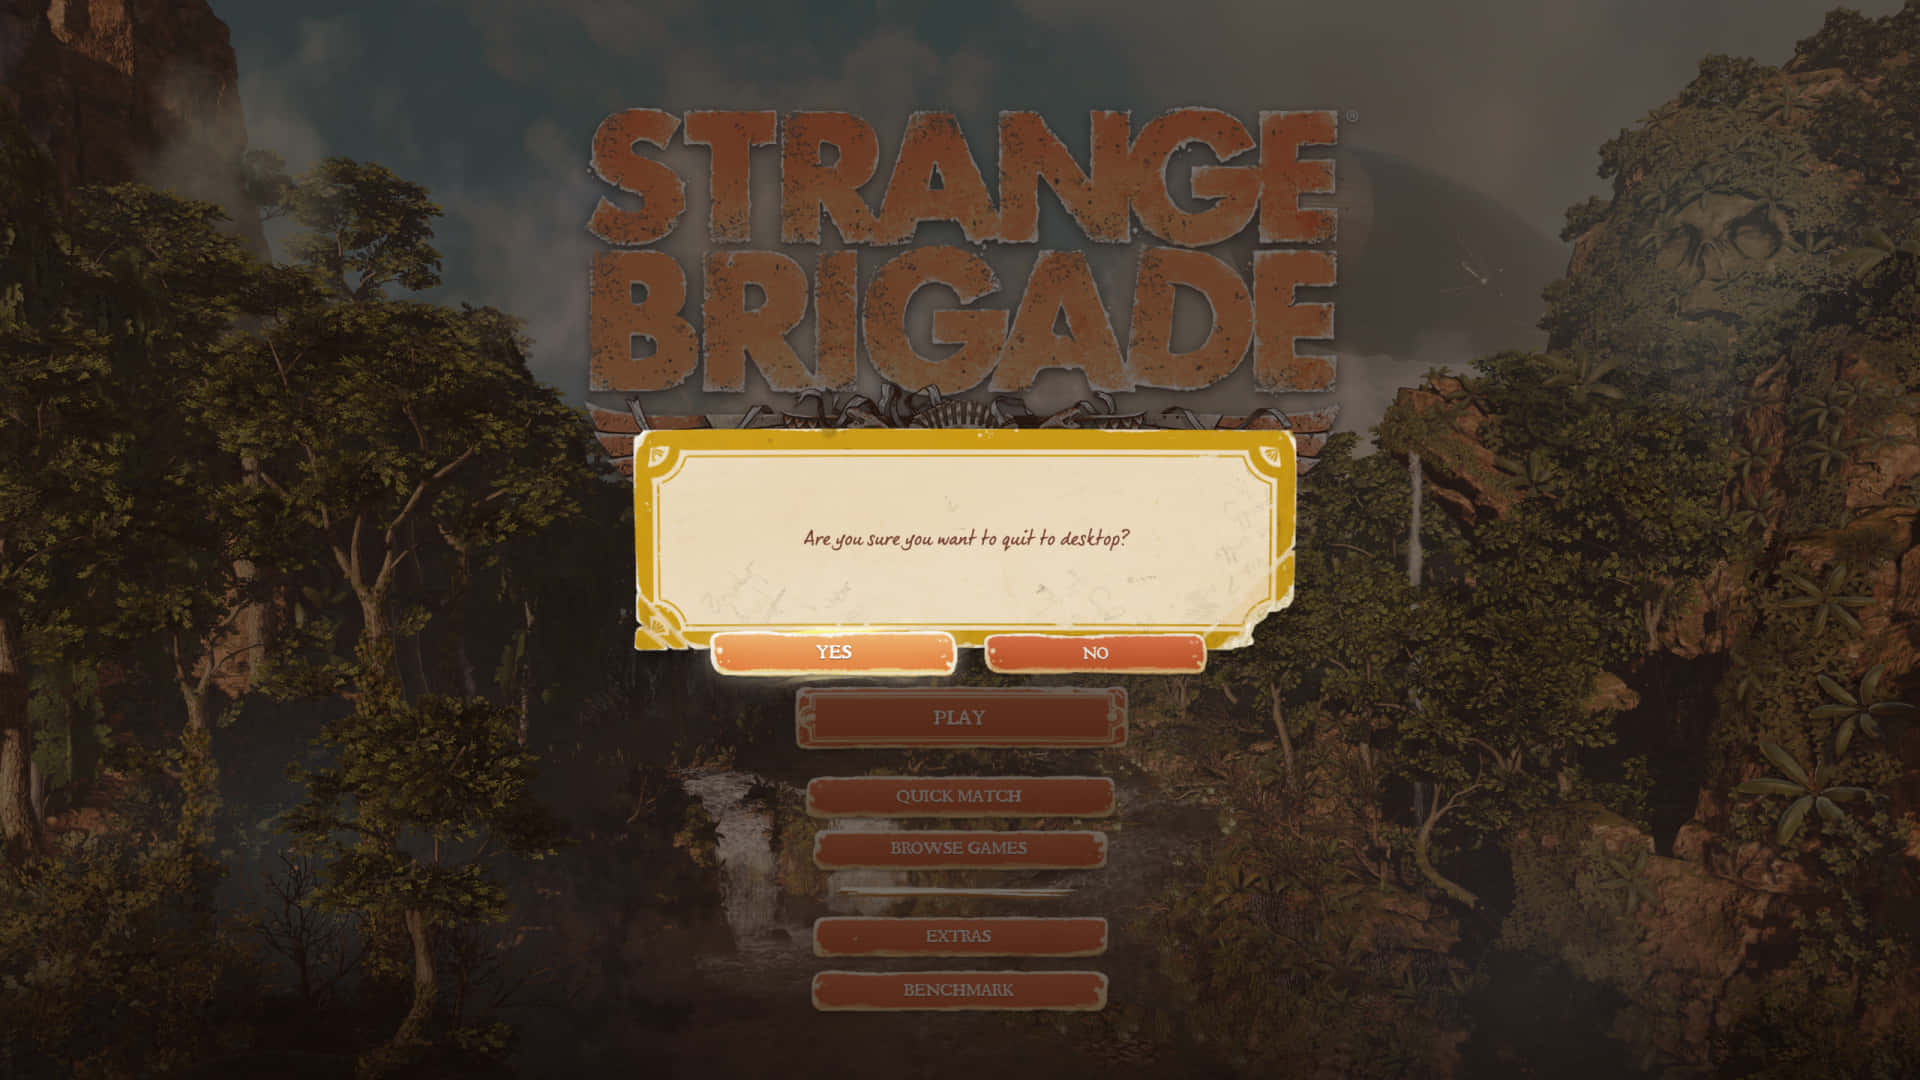 Come join the Strange Brigade!